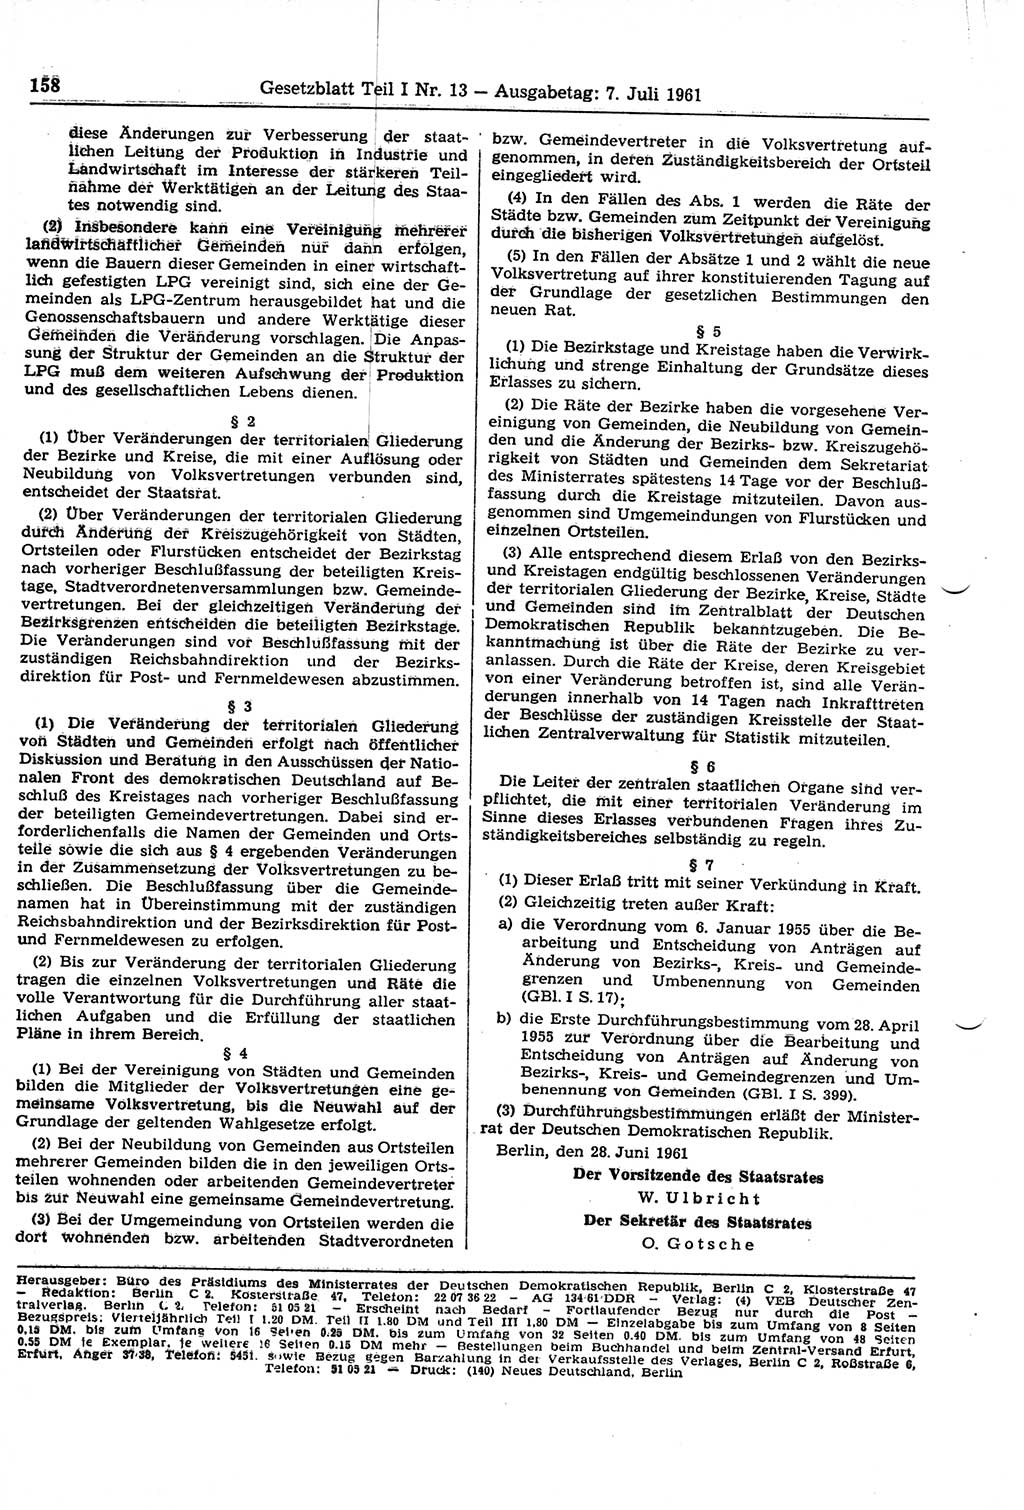 Gesetzblatt (GBl.) der Deutschen Demokratischen Republik (DDR) Teil Ⅰ 1961, Seite 158 (GBl. DDR Ⅰ 1961, S. 158)